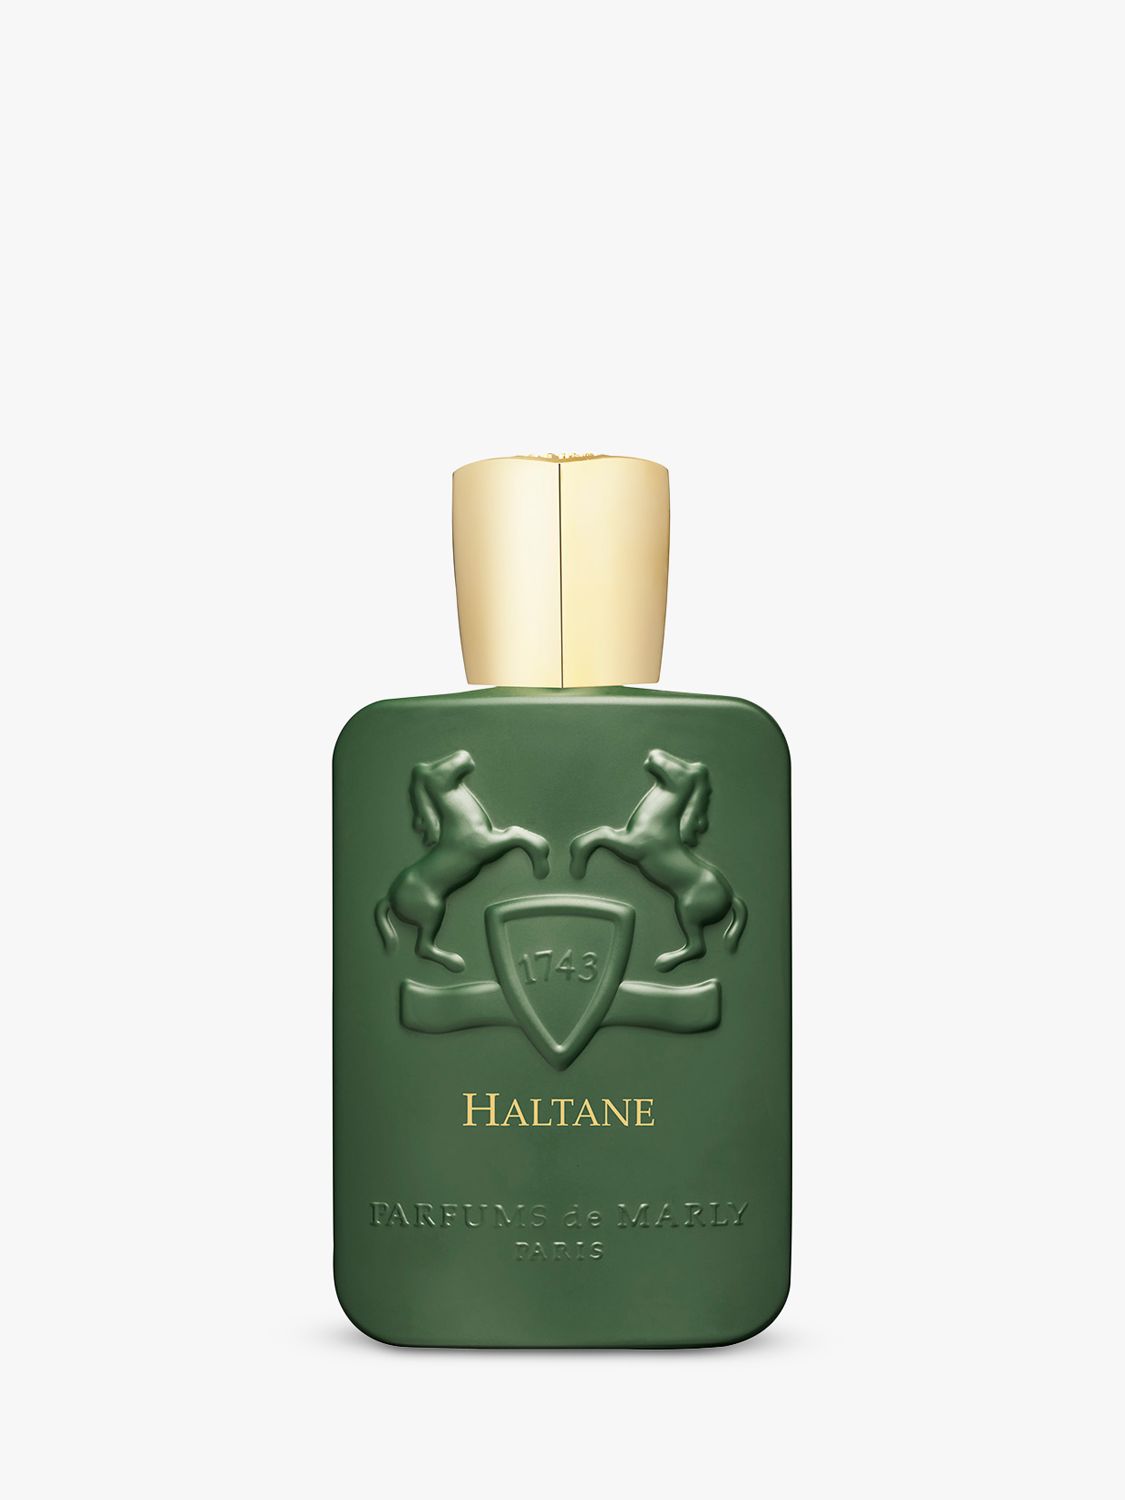 Parfums de Marly Haltane Eau de Parfum, 125ml 2